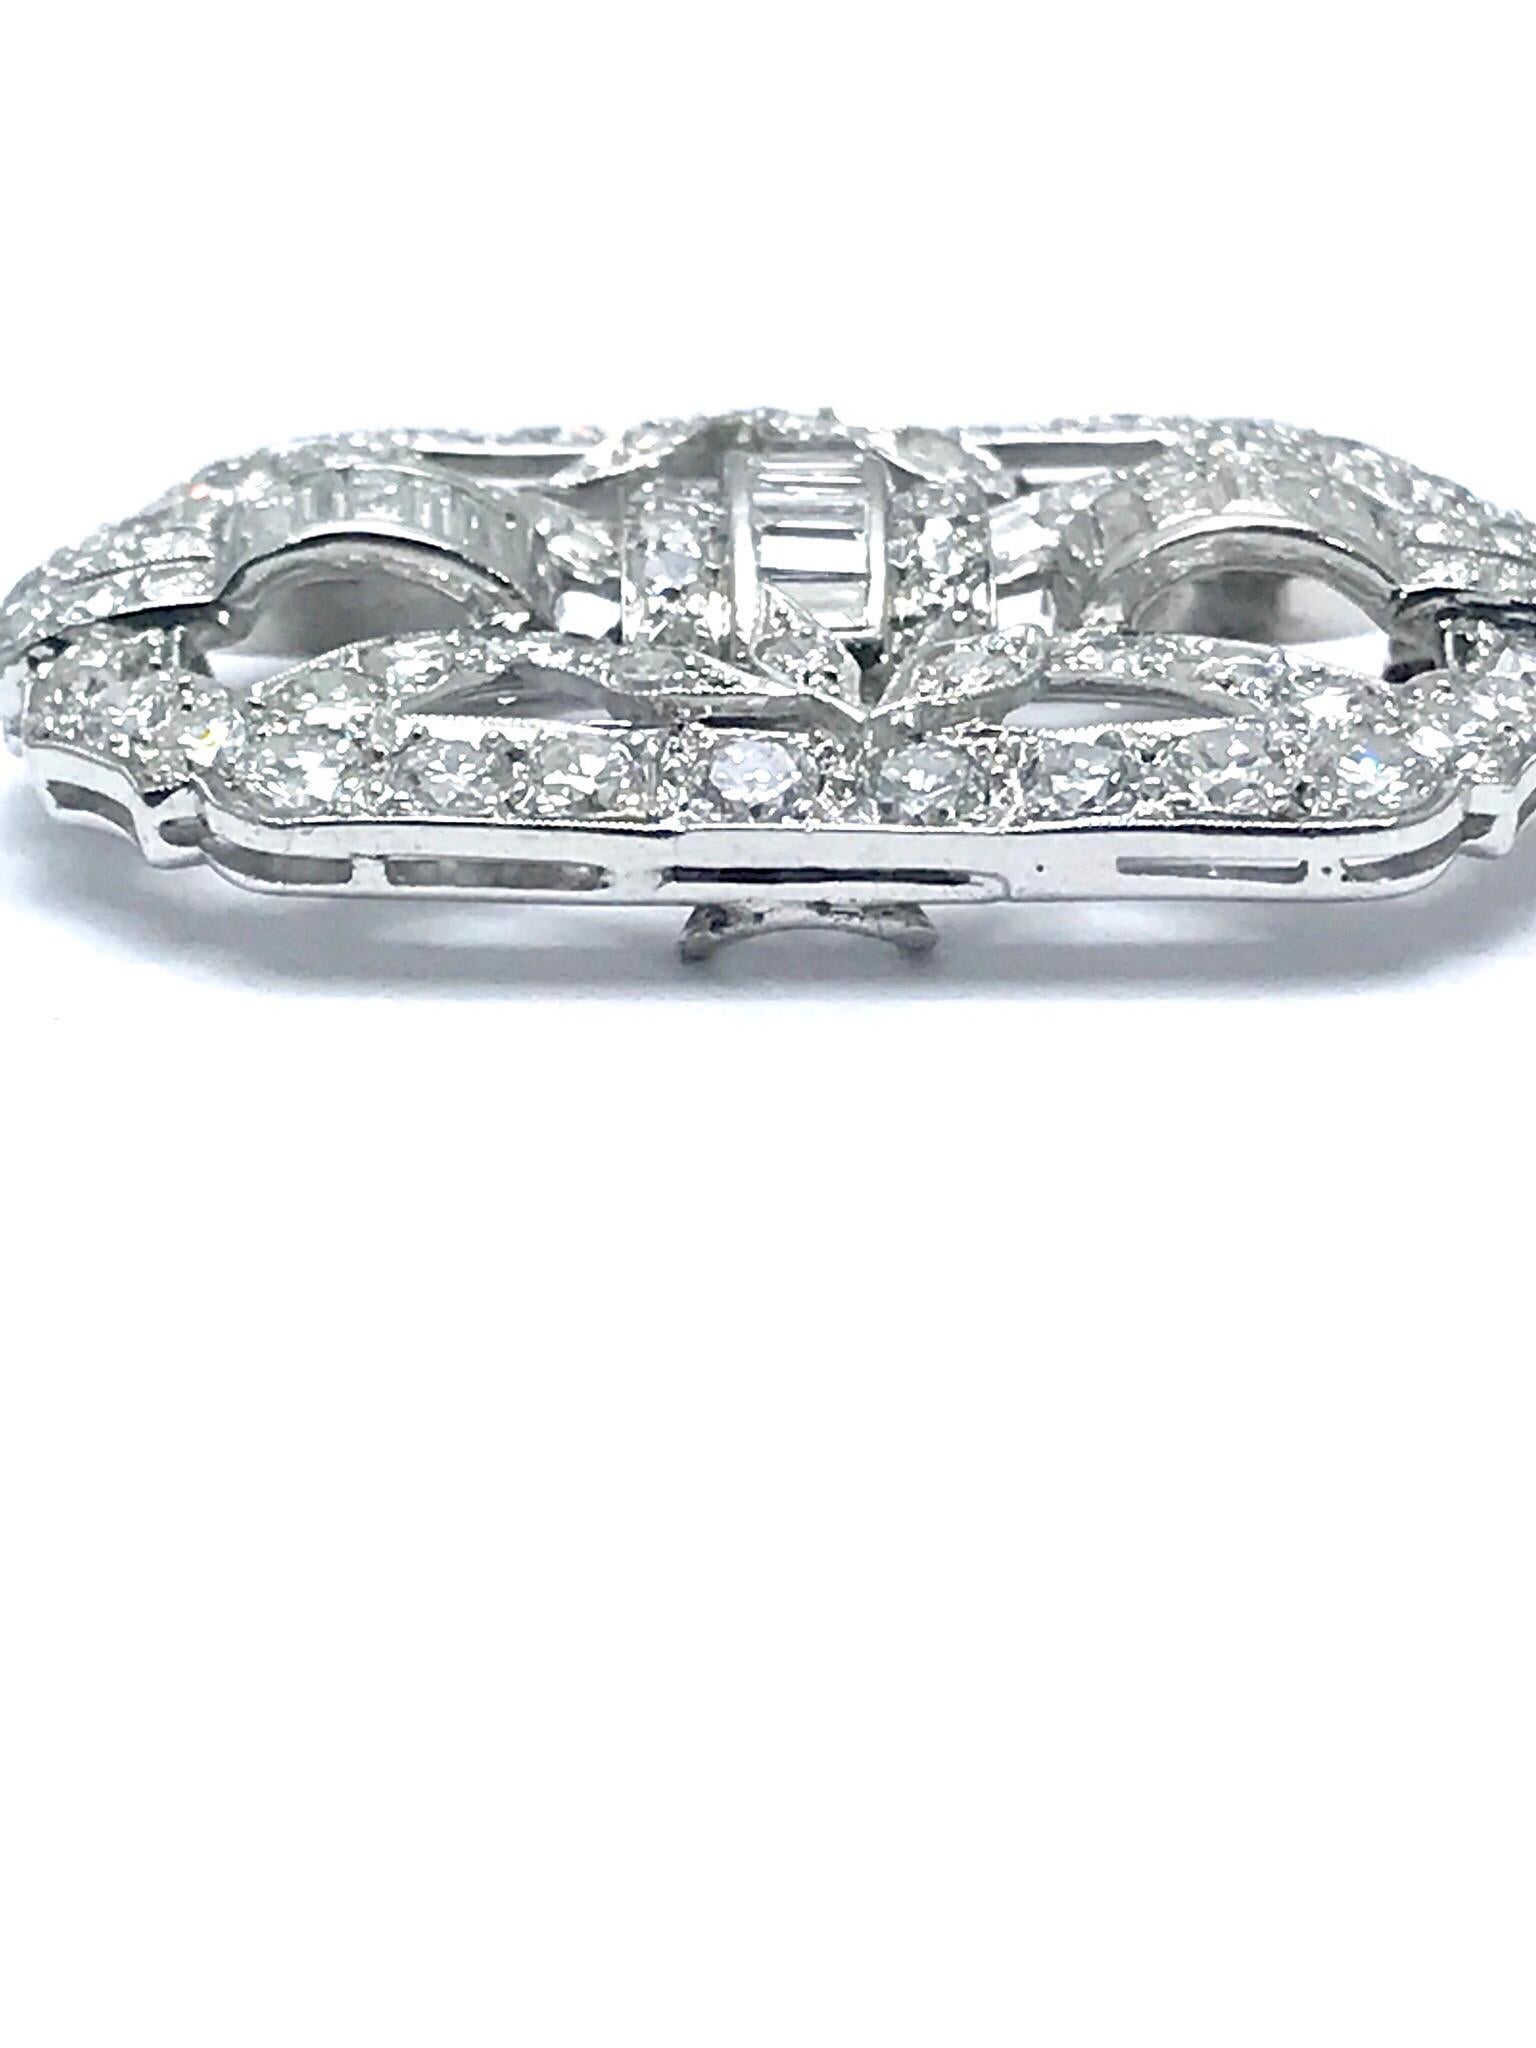 Une belle broche et un pendentif en platine avec des diamants de style Art Déco.  La broche est composée de diamants ronds brillants, taille unique et baguette.  Il y a 58 diamants ronds d'un poids total de 3,14 carats, et 16 diamants baguettes d'un